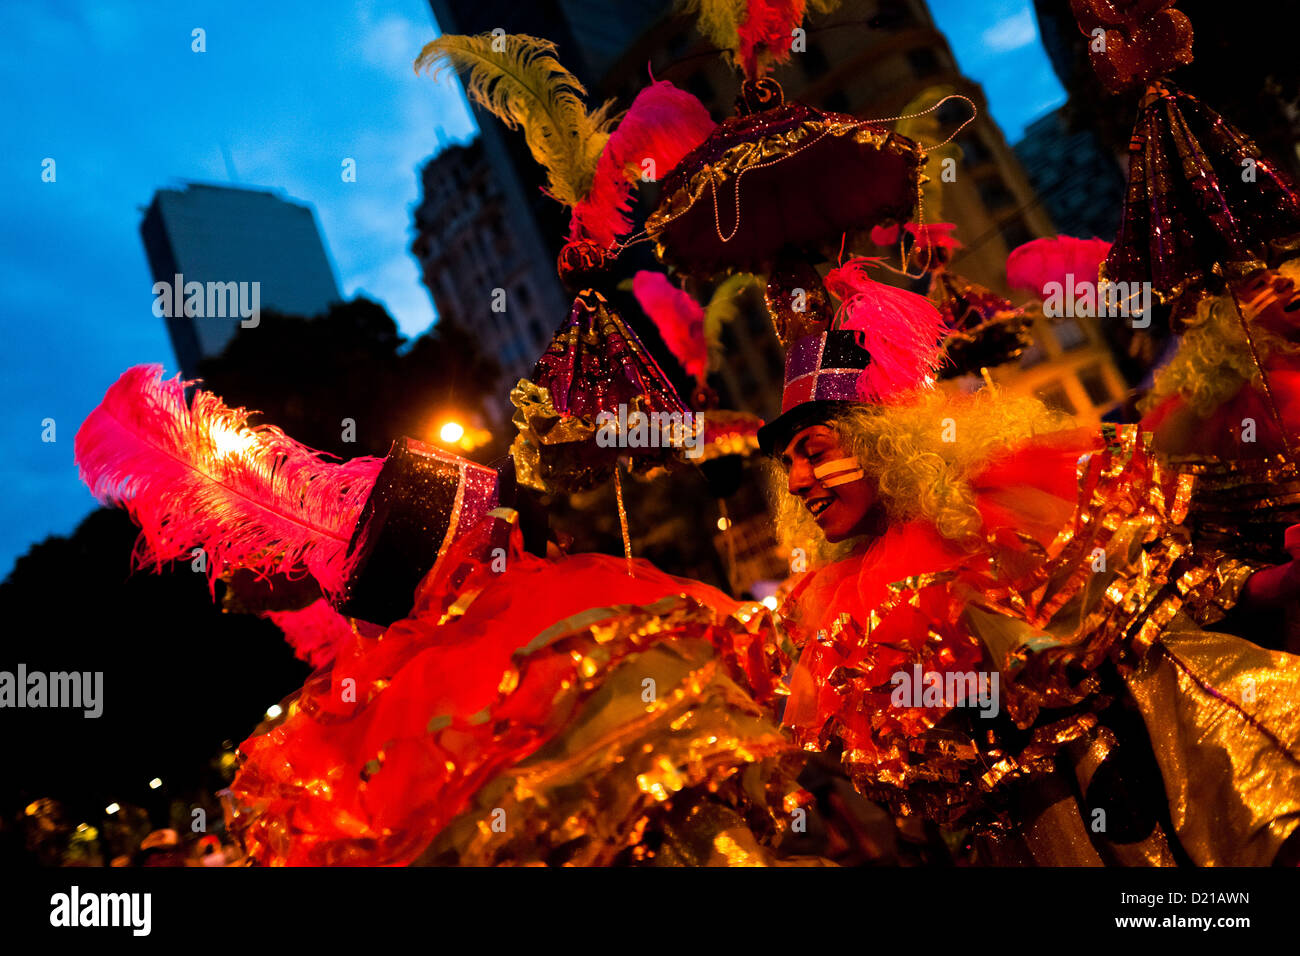 Les garçons du brésil, vêtus de costumes de fantaisie, effectuer au cours de la fête de rue du Carnaval à Rio de Janeiro, Brésil. Banque D'Images